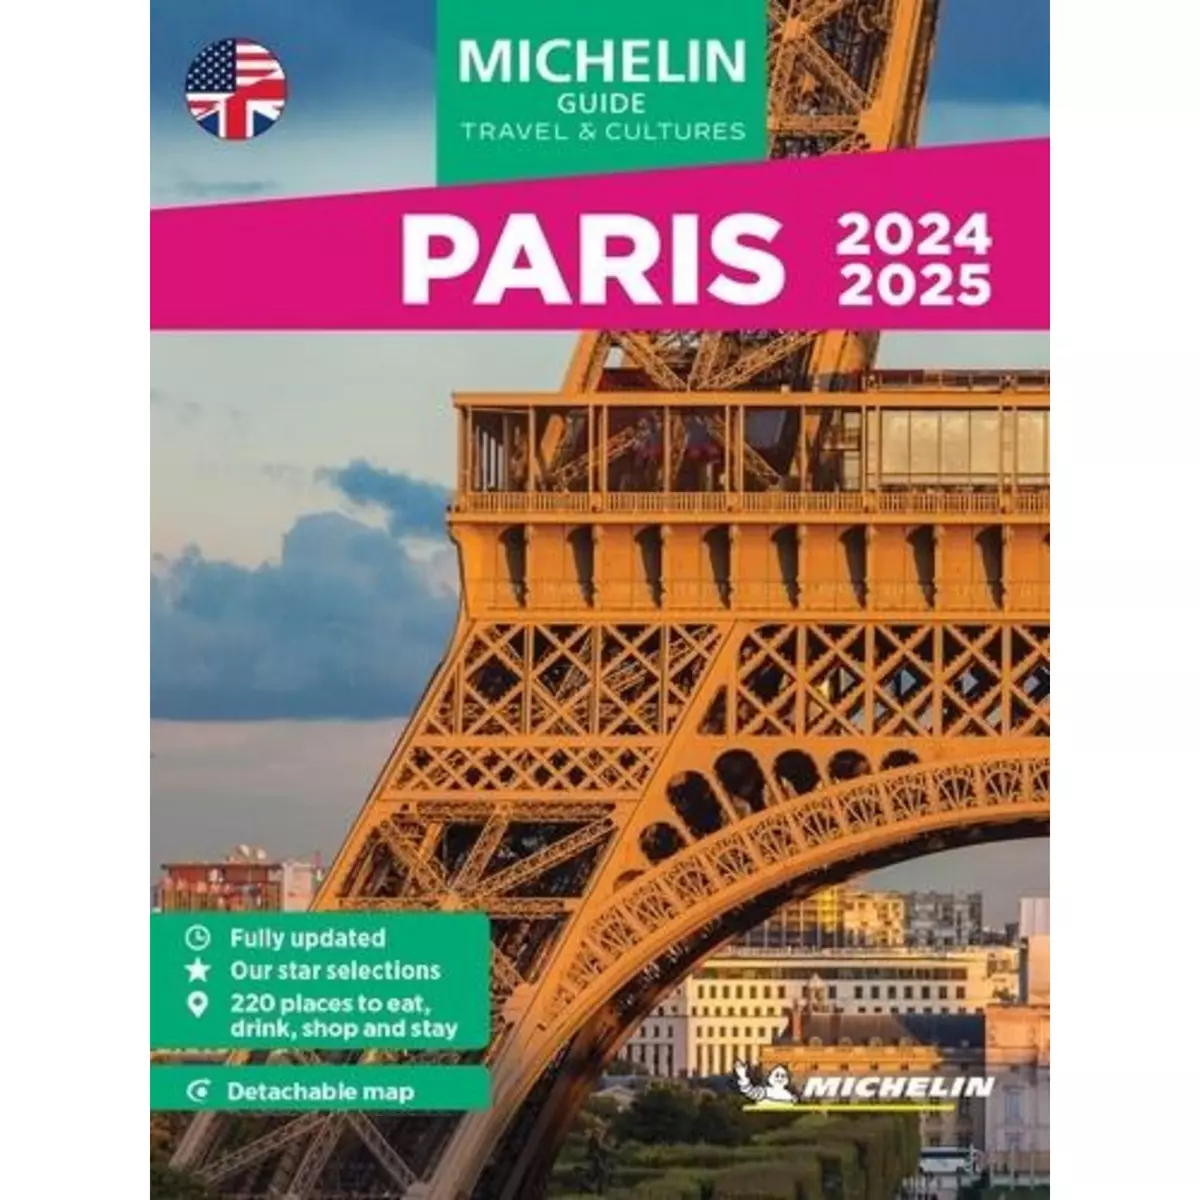  PARIS. EDITION 2024-2025. EDITION EN ANGLAIS. AVEC 1 PLAN DETACHABLE, Michelin